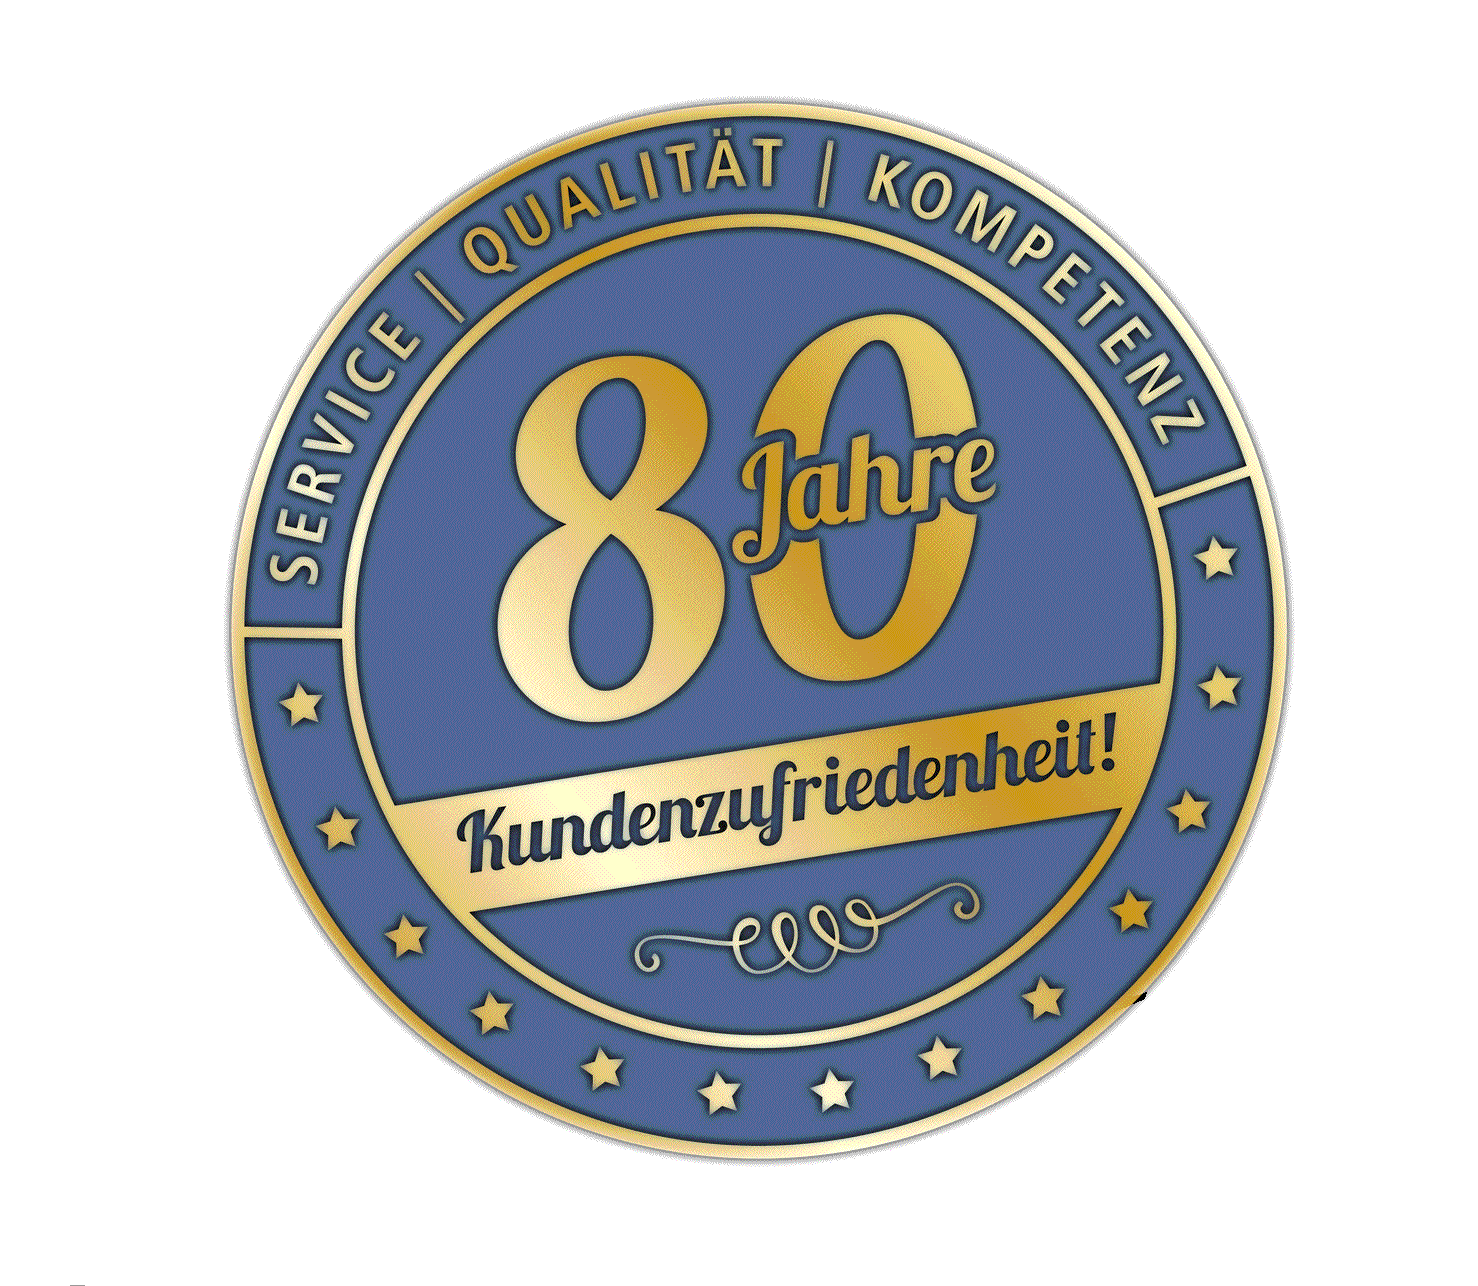 Versicherung Bad Münstereifel- Vertrauenssiegel steht für 80 Jahre Vertrauen und Kundenzufriedenheit